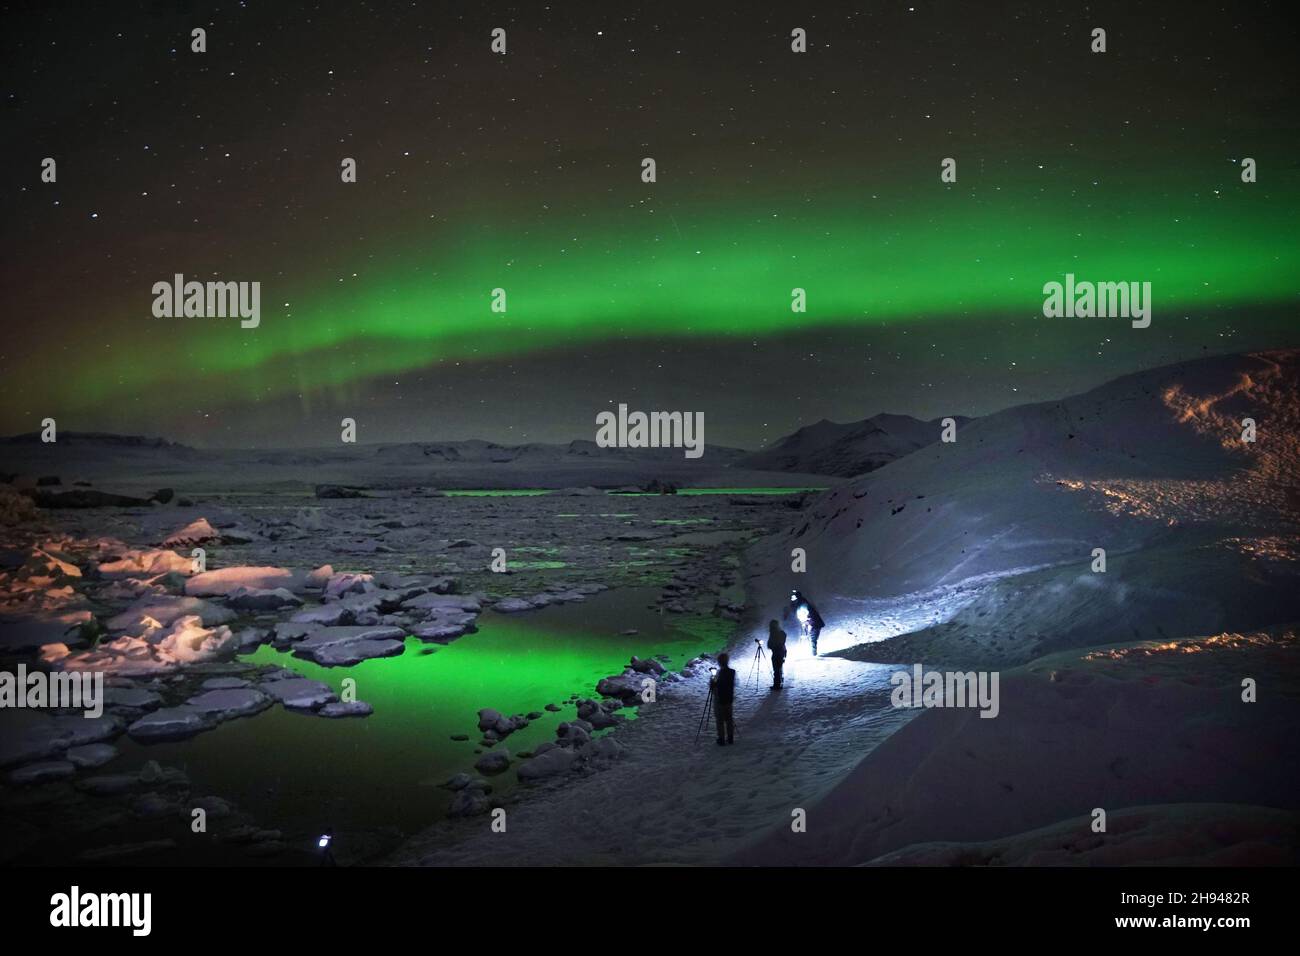 Die Nordlichter, auch bekannt als aurora borealis, über einer Gletscherlagune in Jokulsarlon, Island. Bilddatum: Freitag, 3. Dezember 2021. Stockfoto